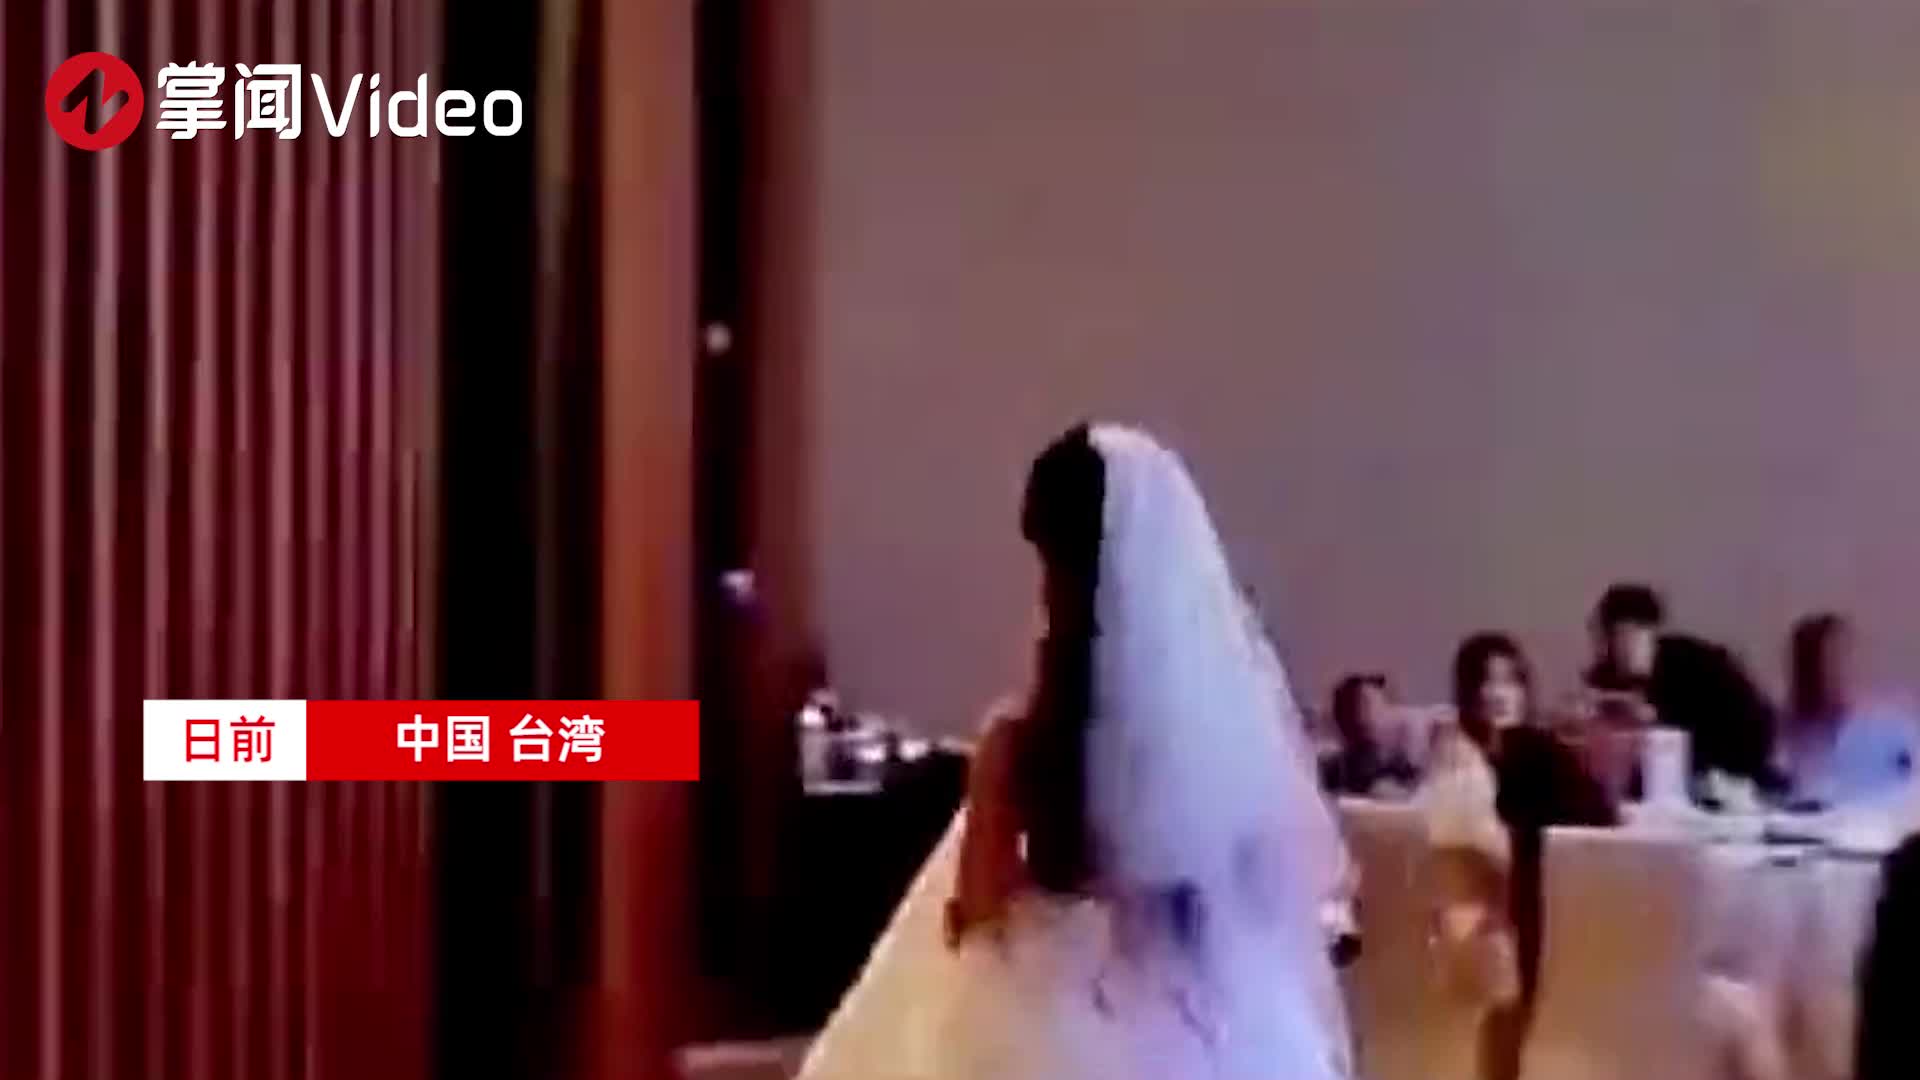 2014-2020｜重磅人文婚礼大片《中国新娘》年度盘点 - 风尚大片 - 婚礼风尚